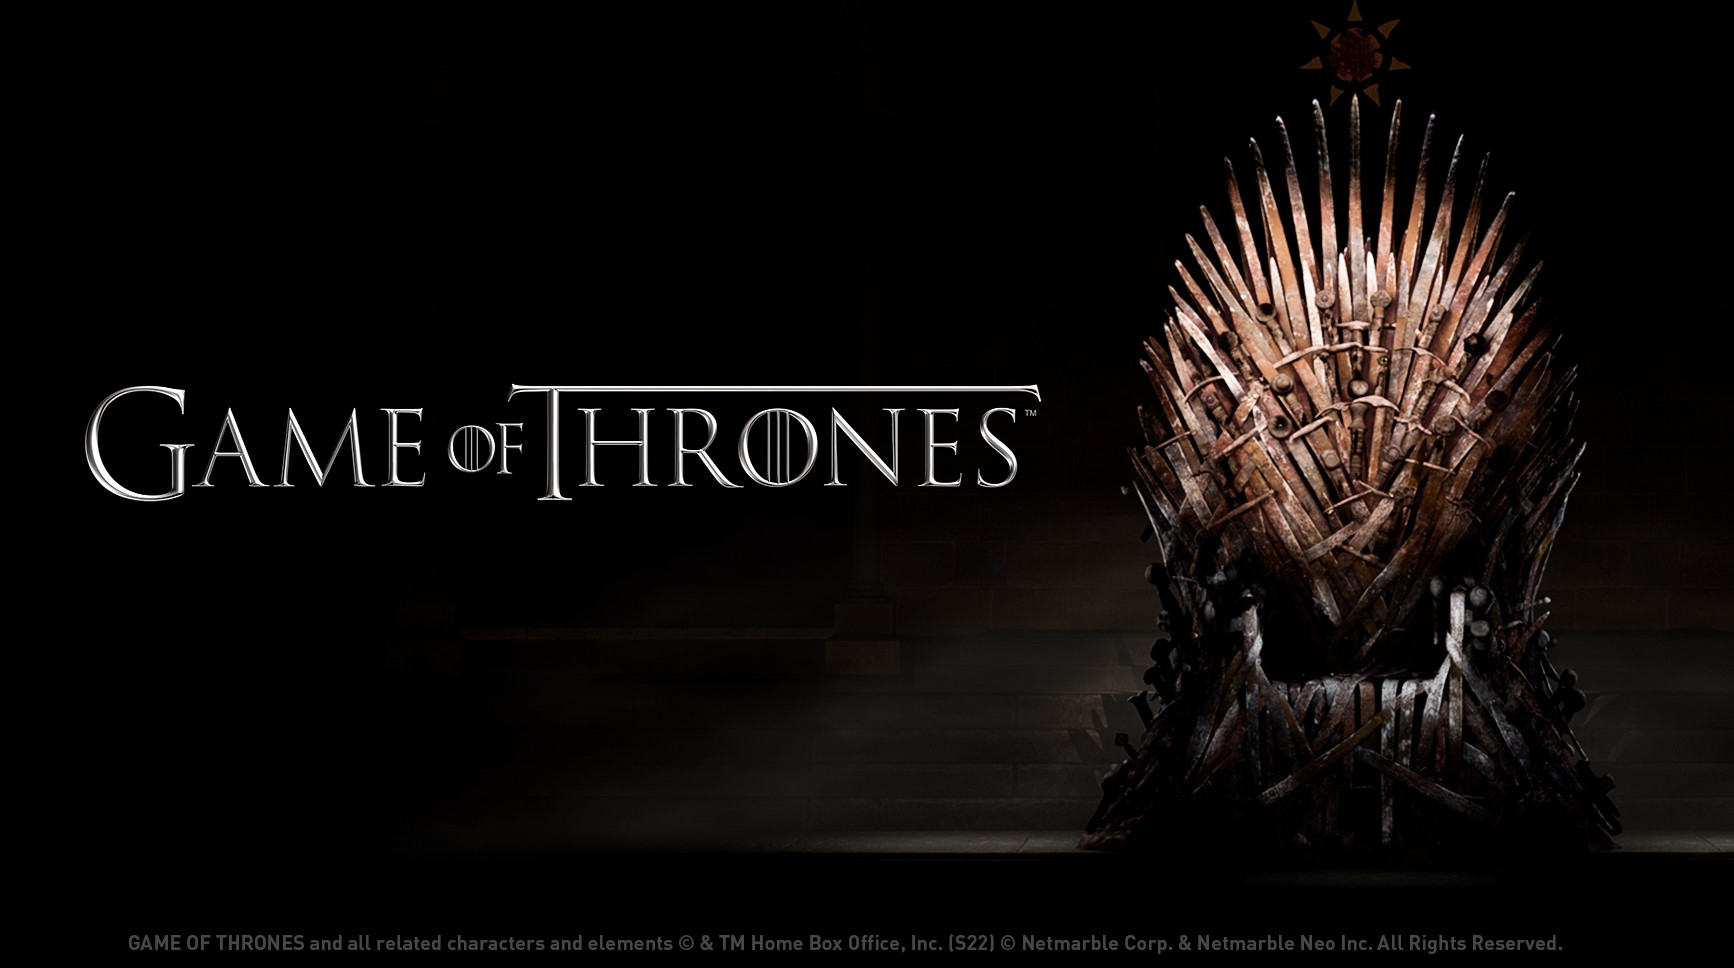 Đã có thể xem series Trò chơi vương quyền (Game of Thrones) với chất lượng 4K HDR trên HBO Max